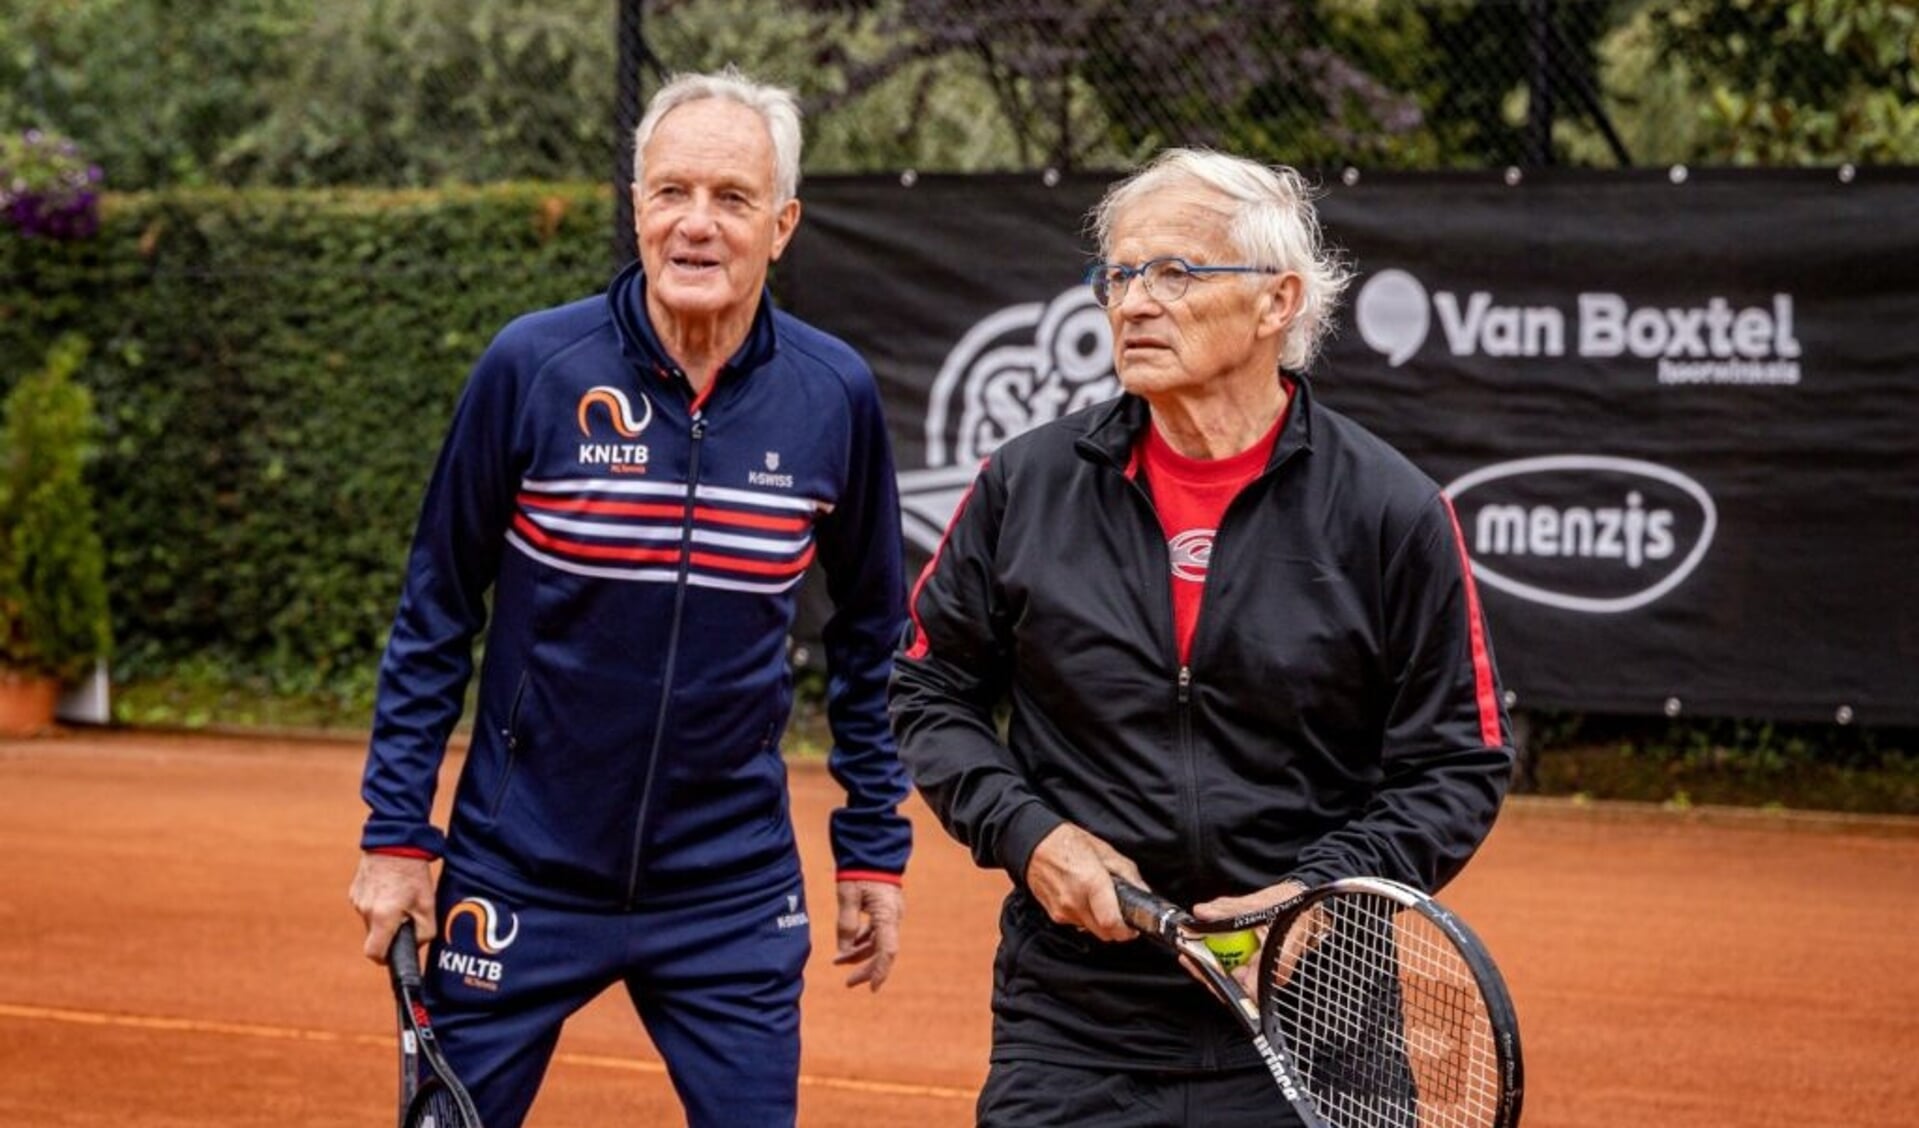 De eerste Oldstars tennisles is woensdag 27 oktober.